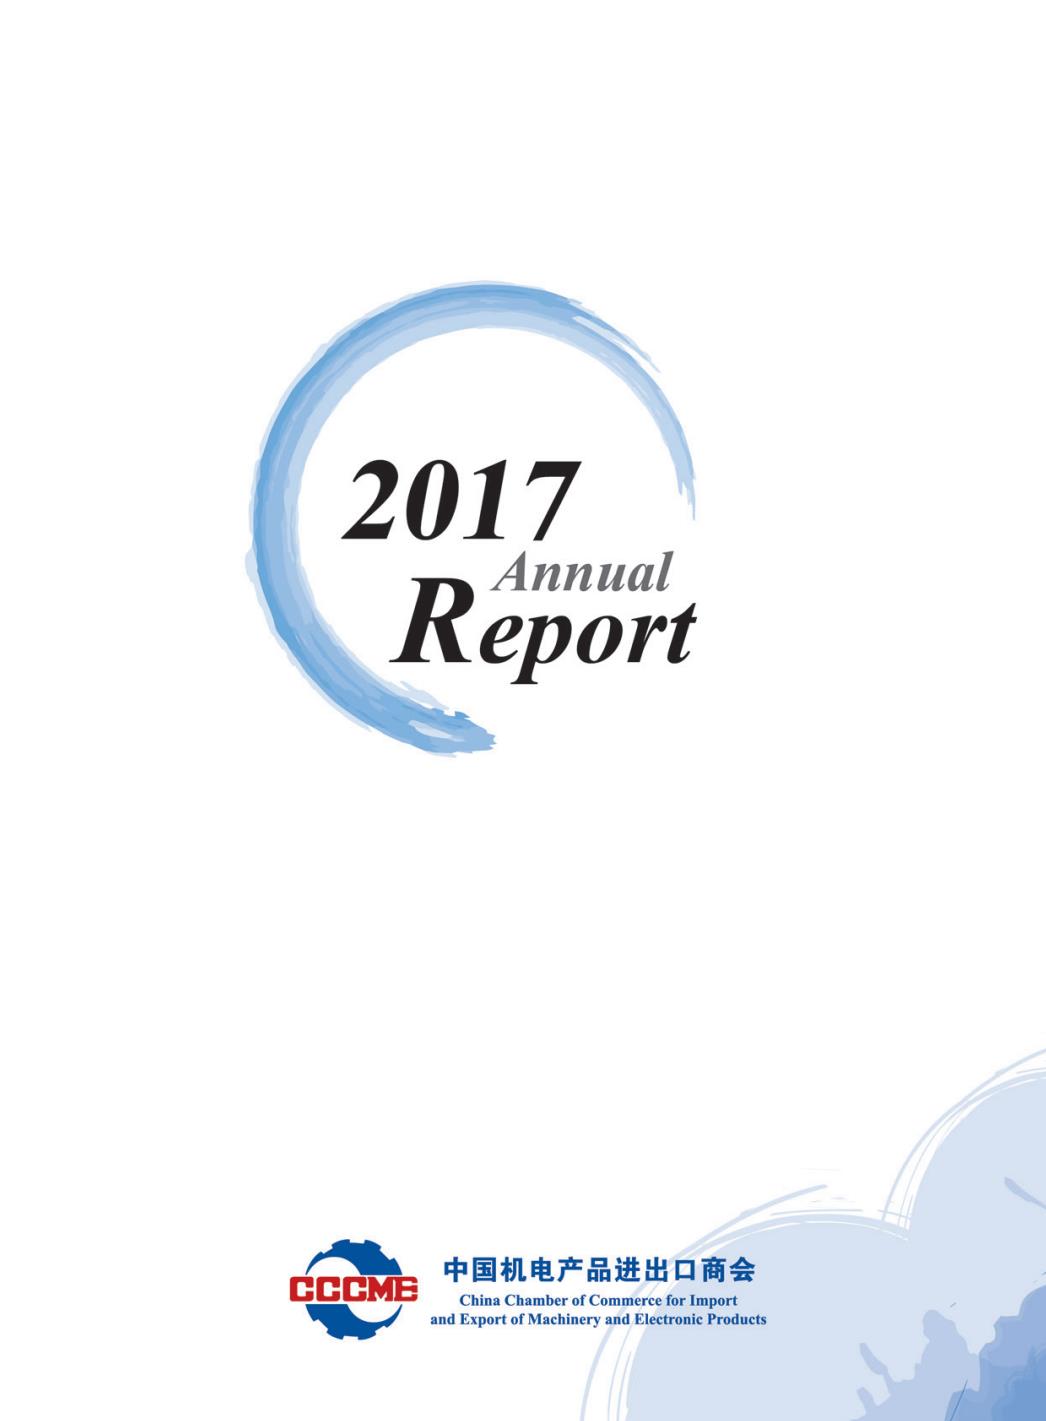 机电商会2017年度报告-英文版